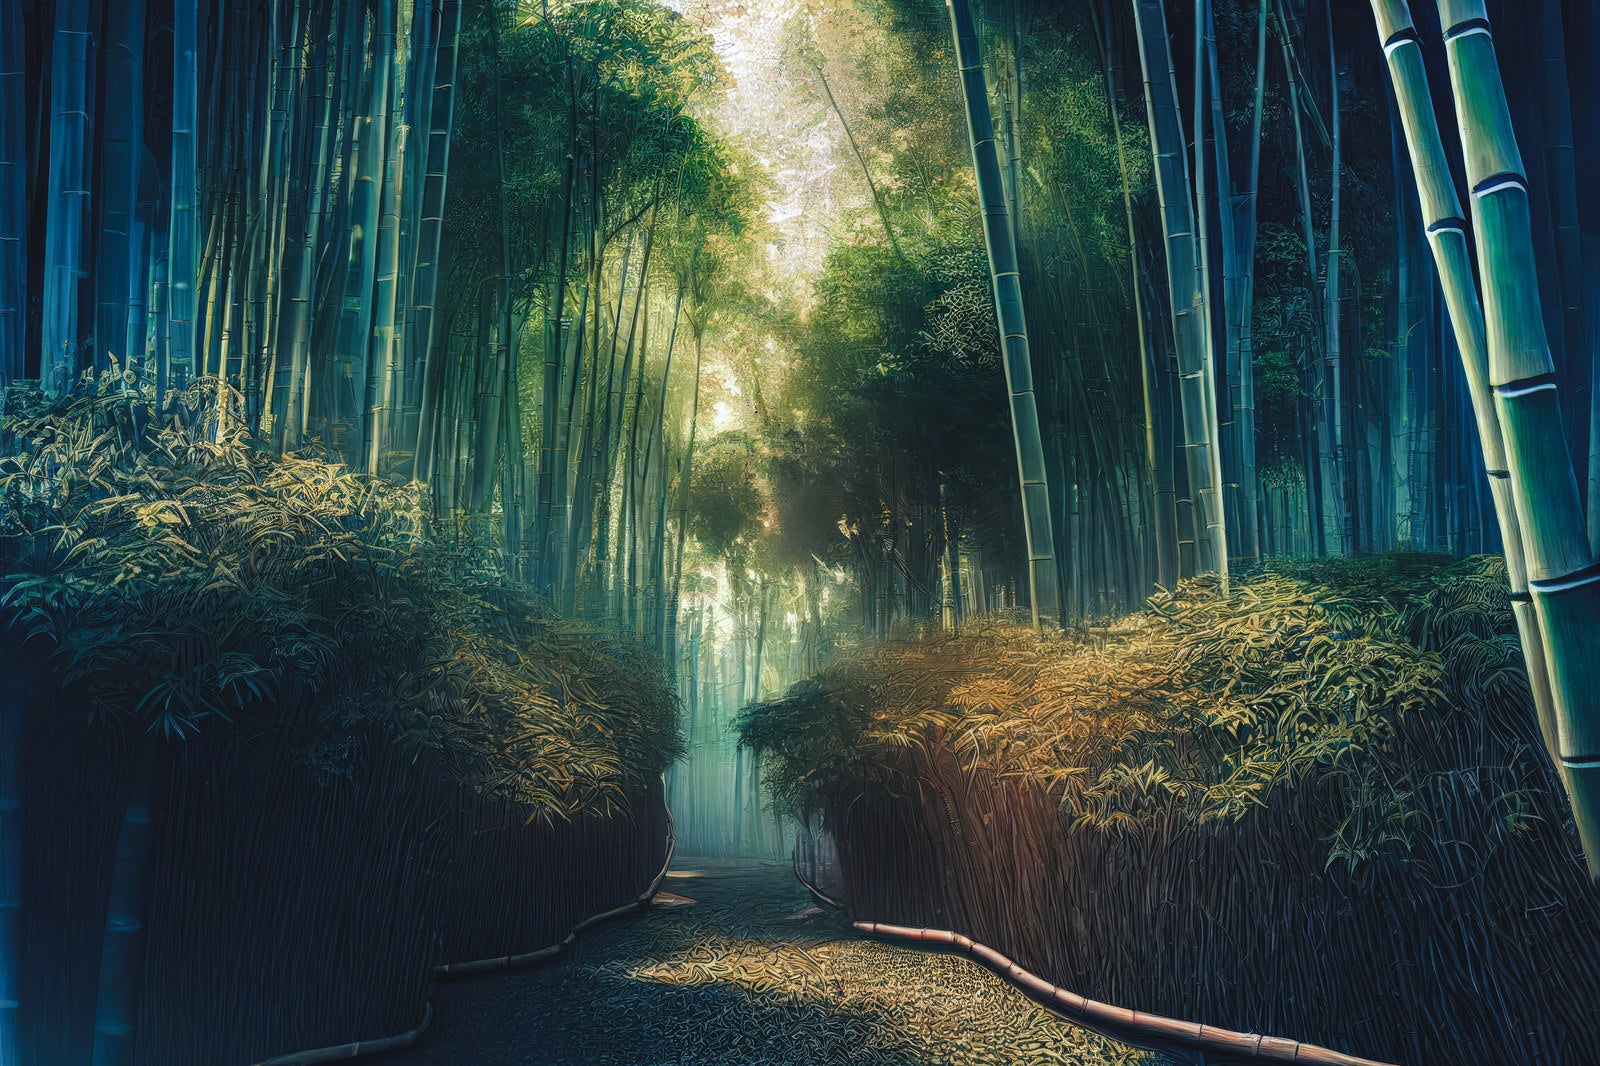 「木漏れ日と竹林の道」の写真